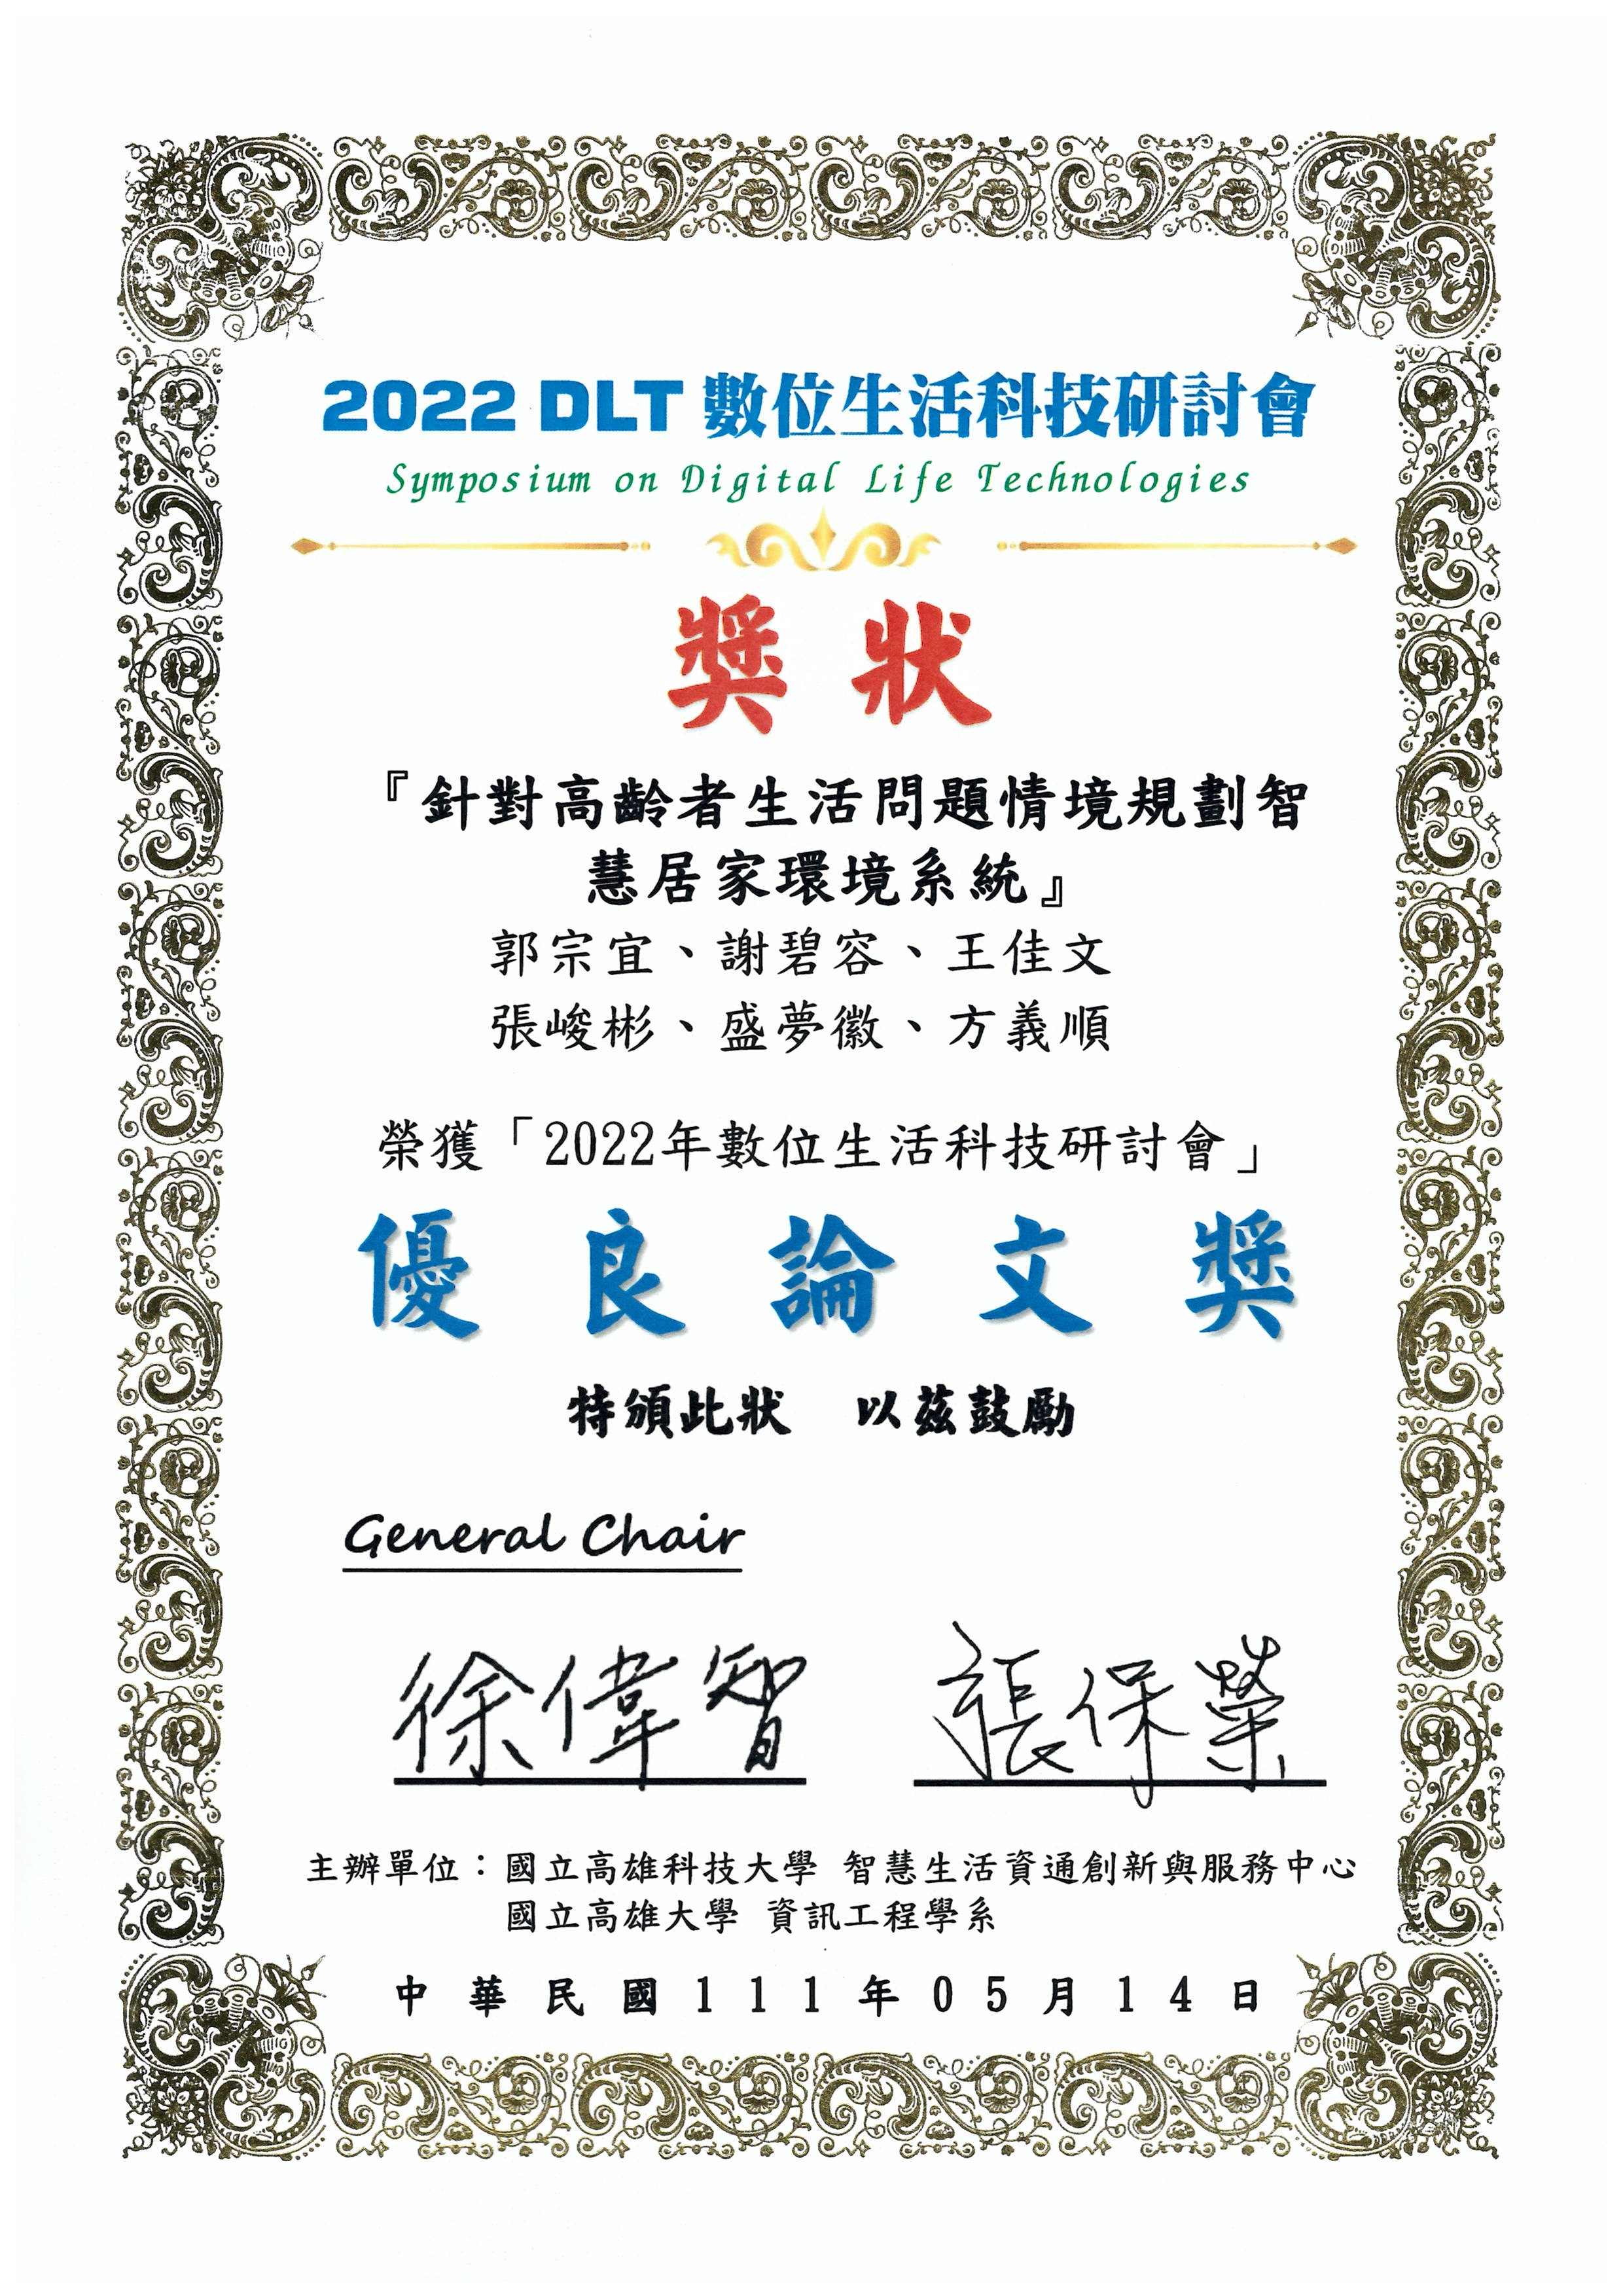 恭賀本系 兩組 優秀師生團隊榮獲 2022DLT數位生活科技研討會 優良論文獎!